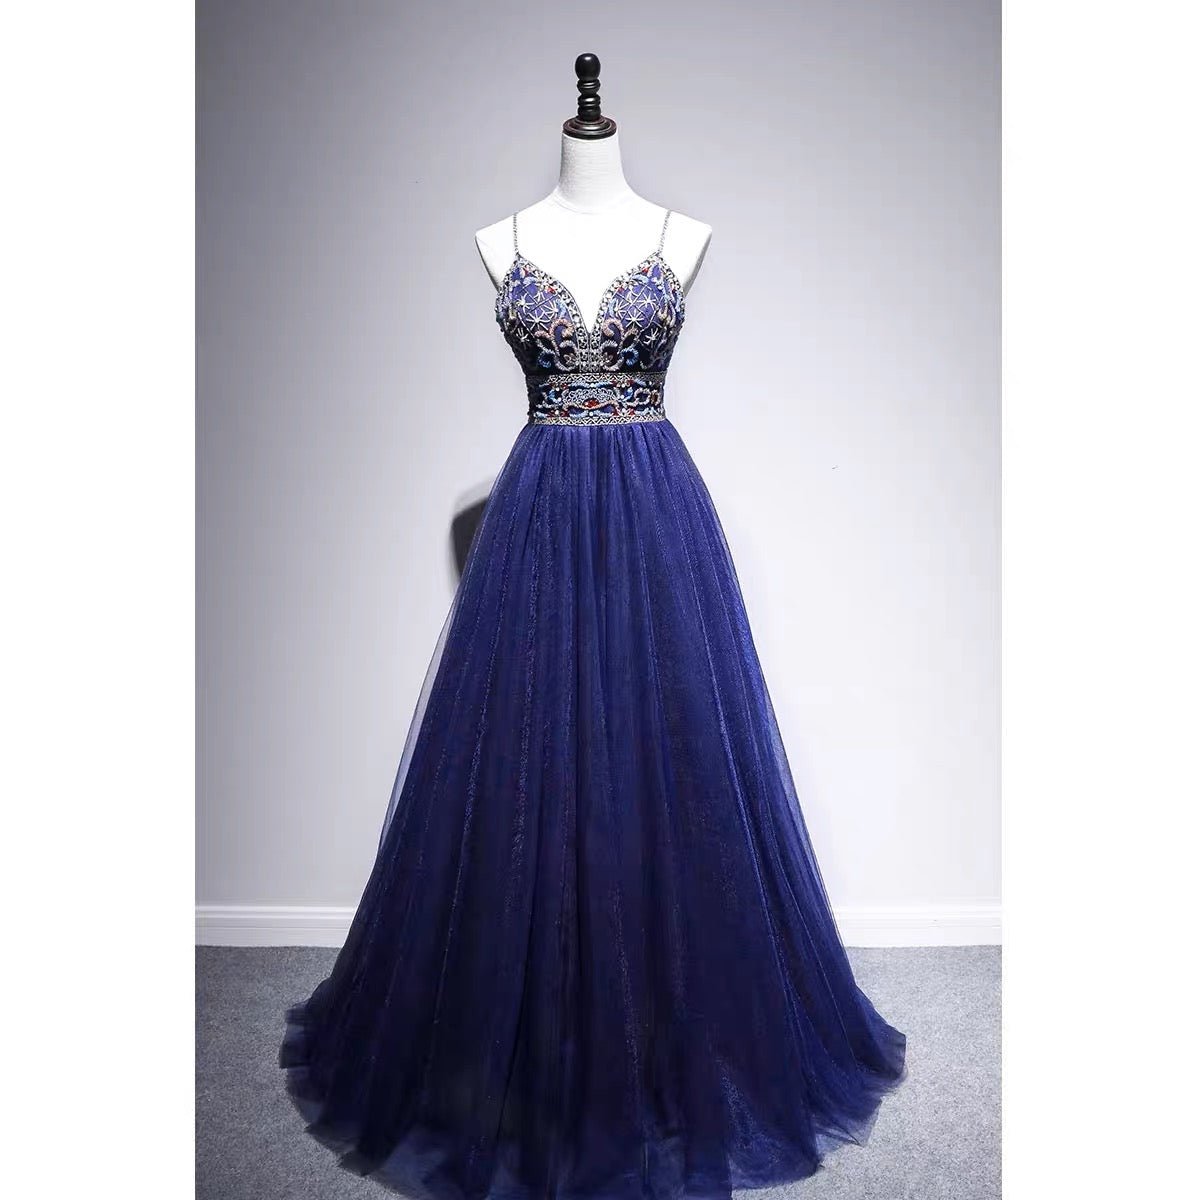 sapphire blue dress